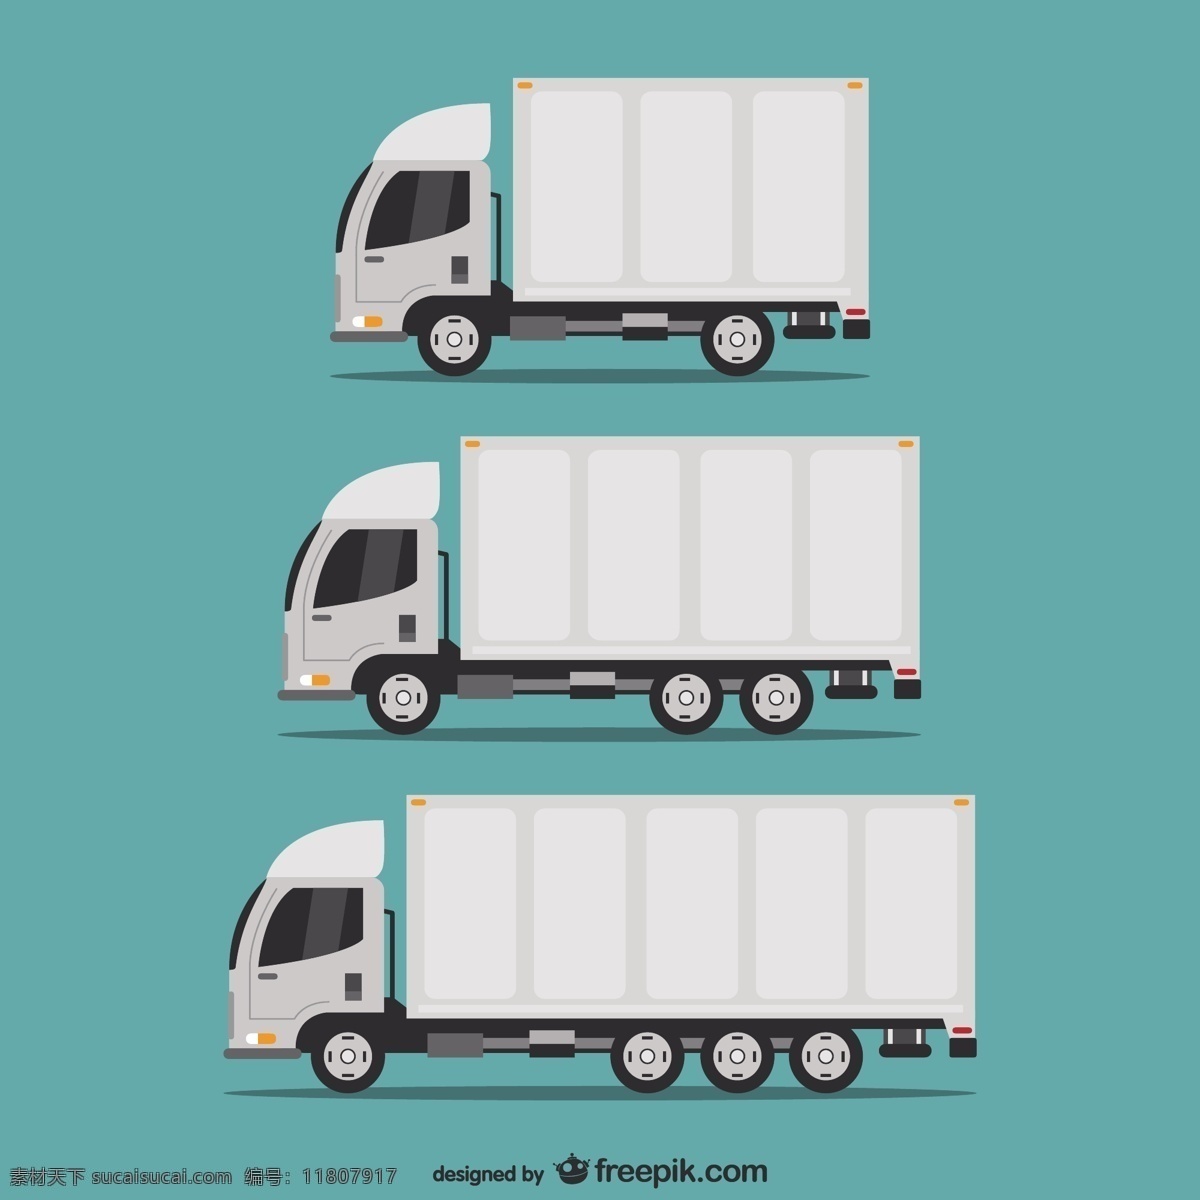 运输卡车组 汽车 图标 模板 图形 布局 平面设计 交通 元素 设计元素 符号 汽车图标 车辆 图标集 青色 天蓝色